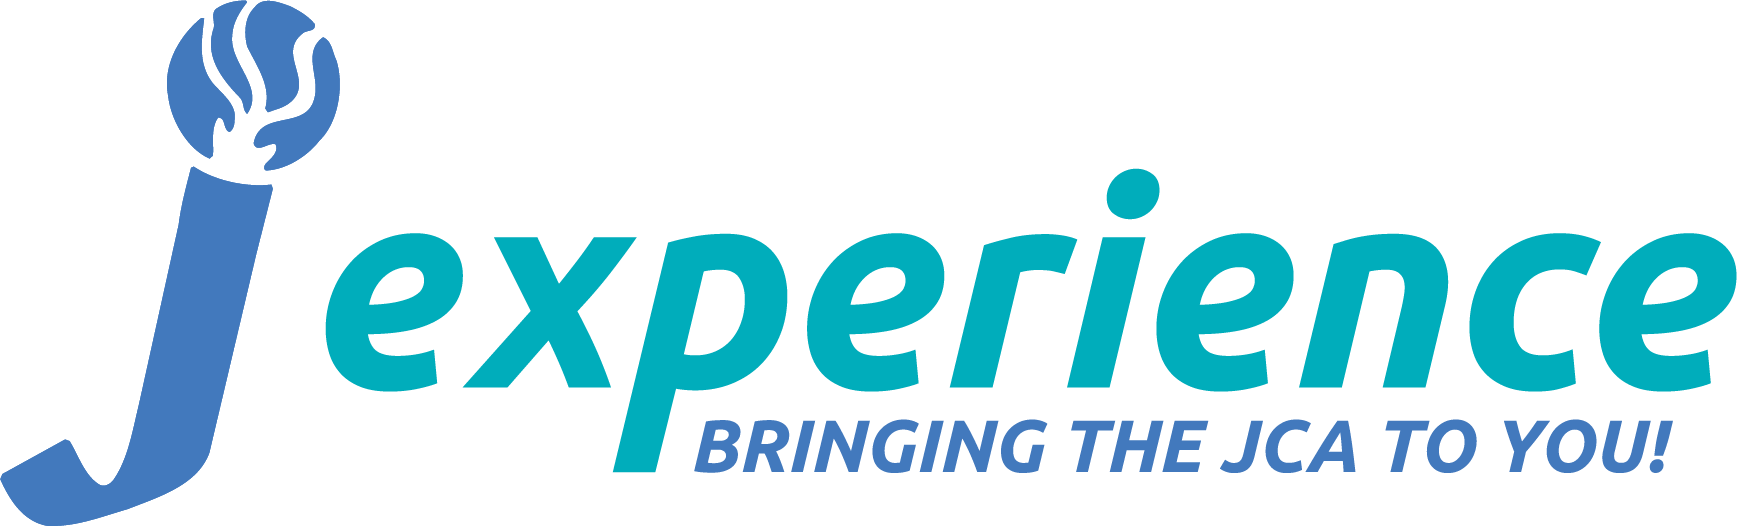 J Experience logo